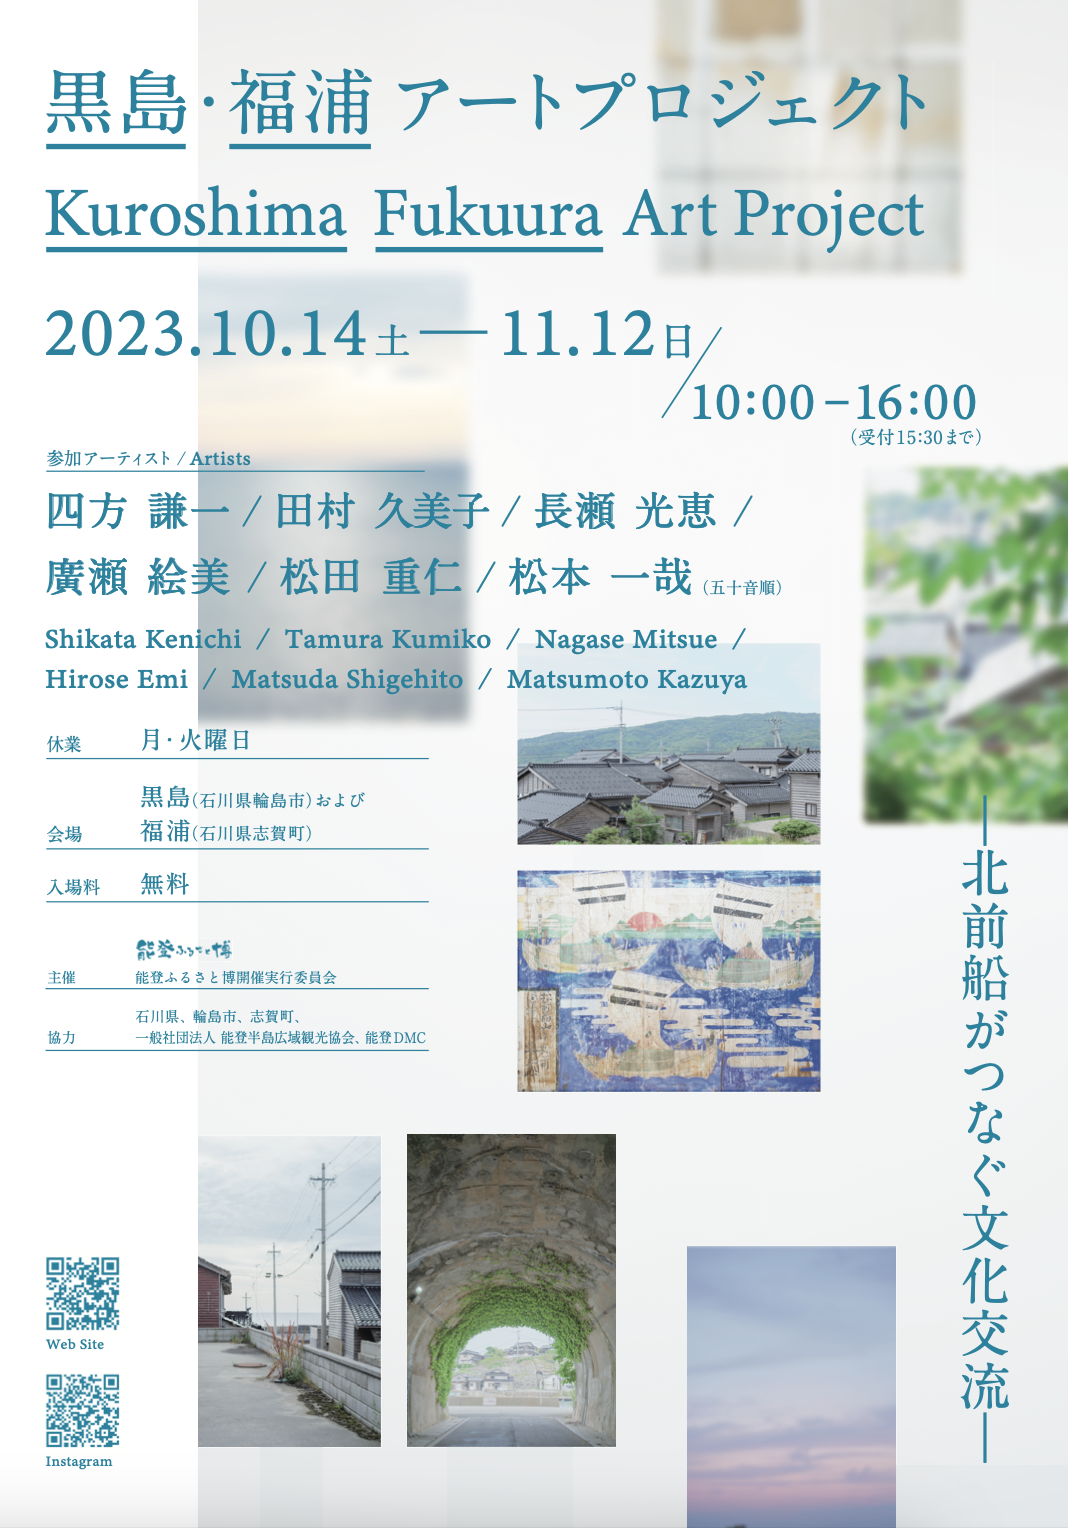 「黒島・福浦アートプロジェクト」を開催いたします